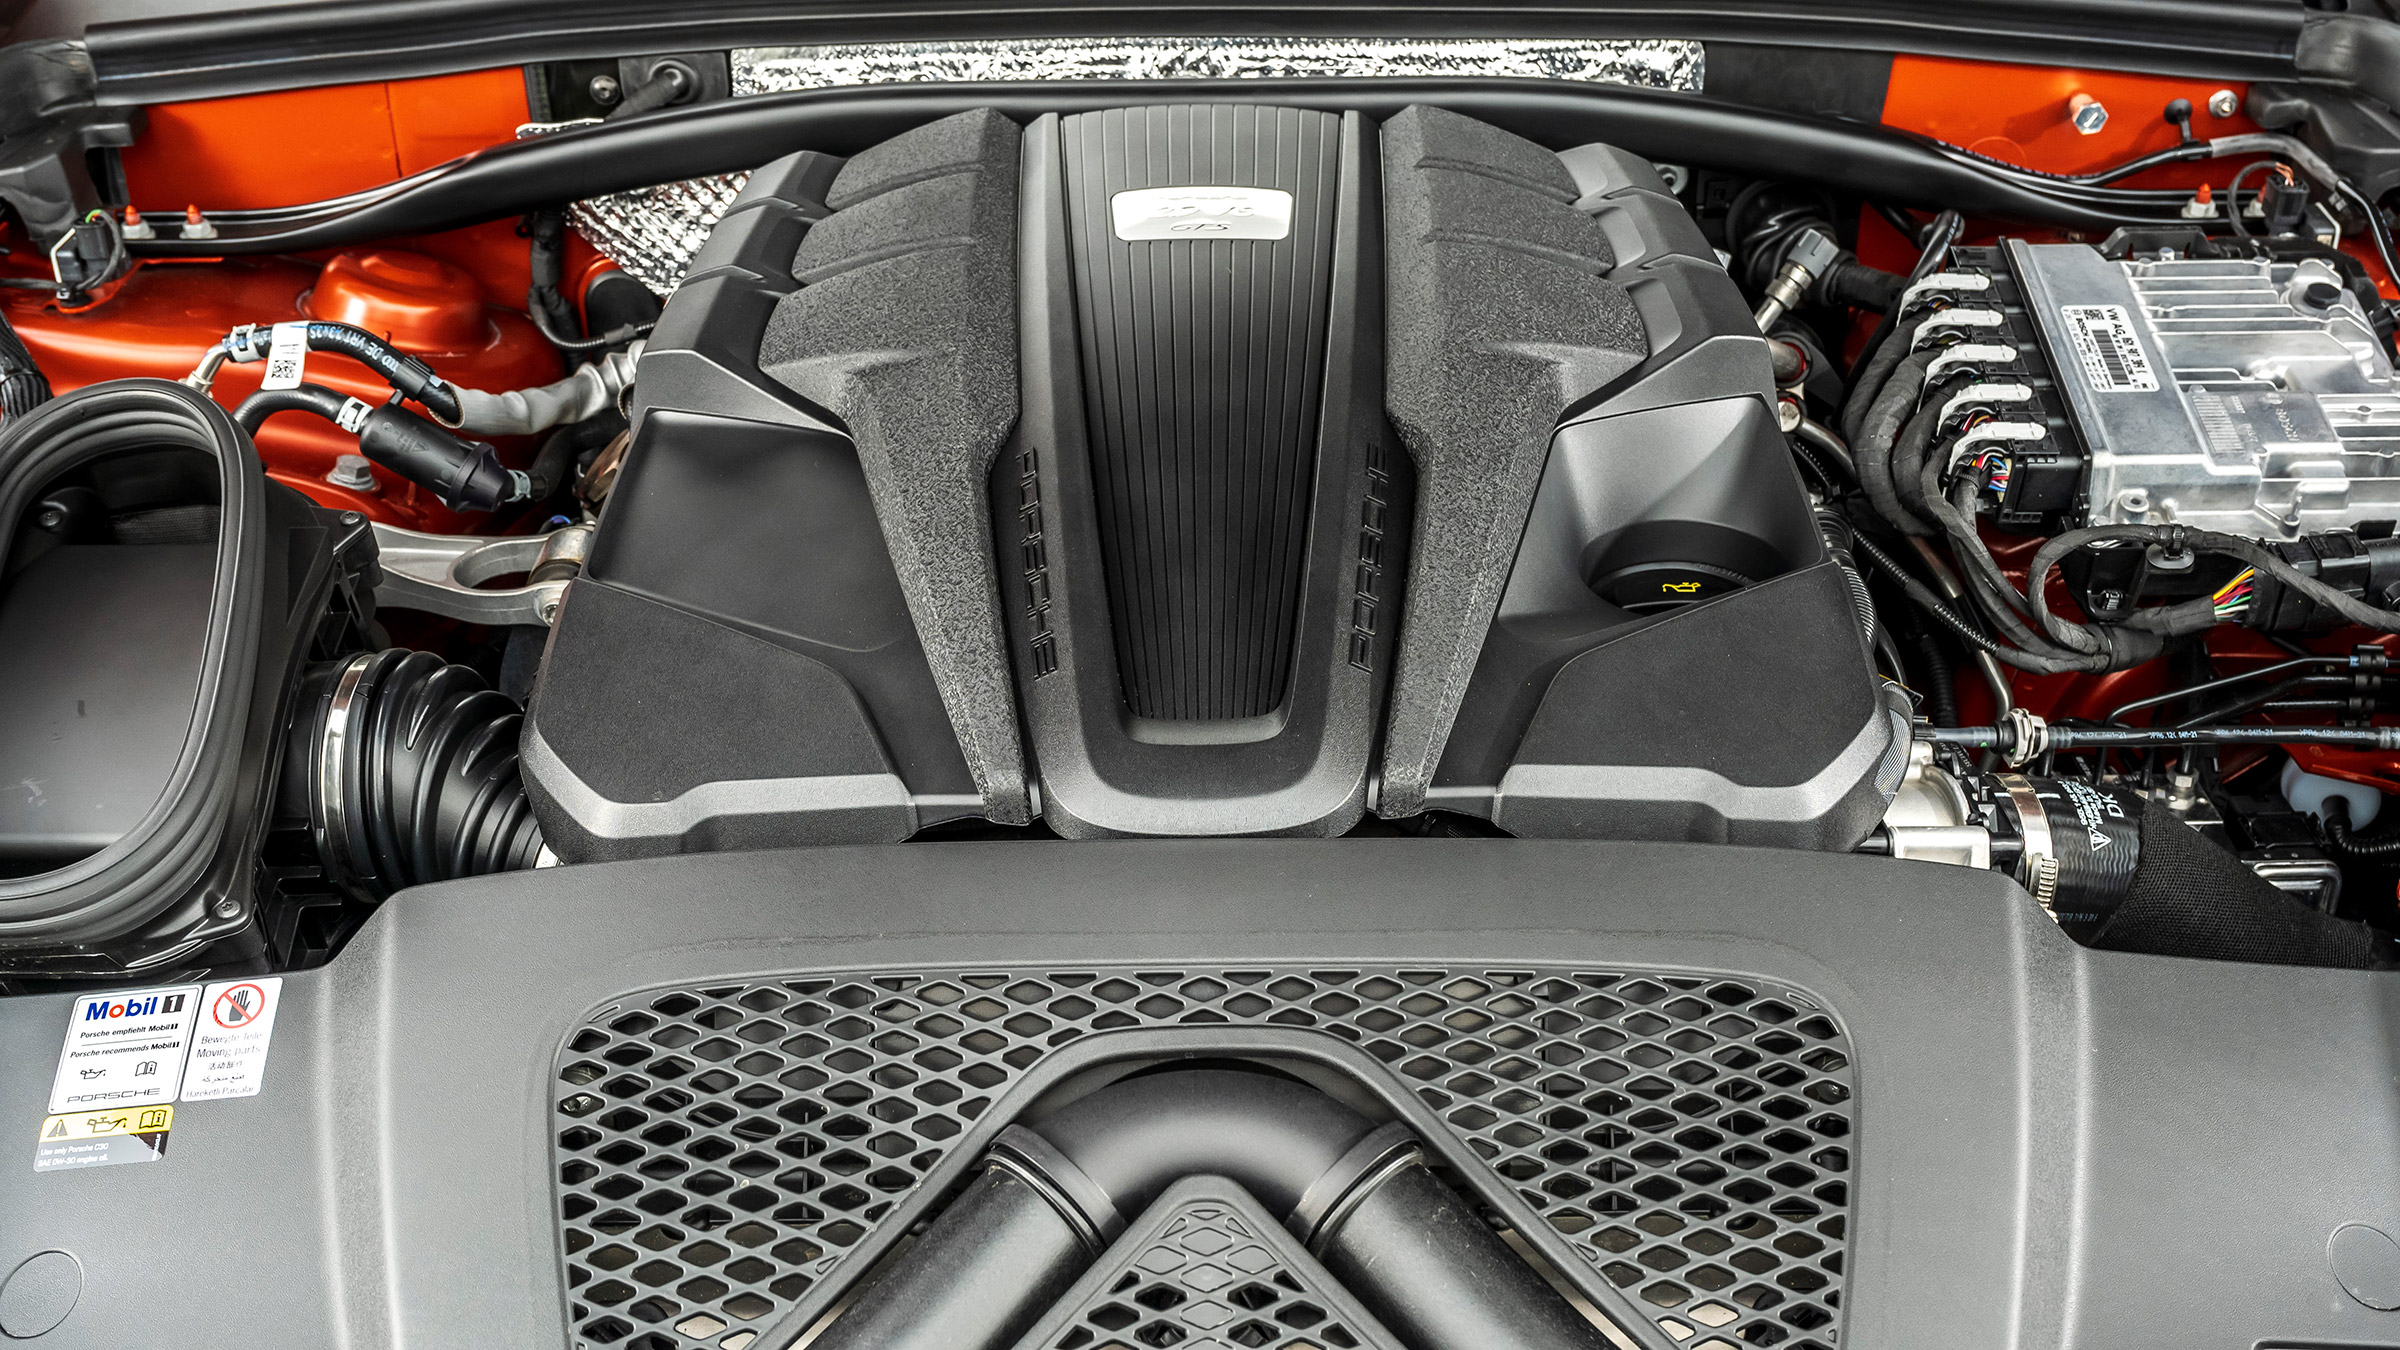 Power of the Turbocharged V6 Engine